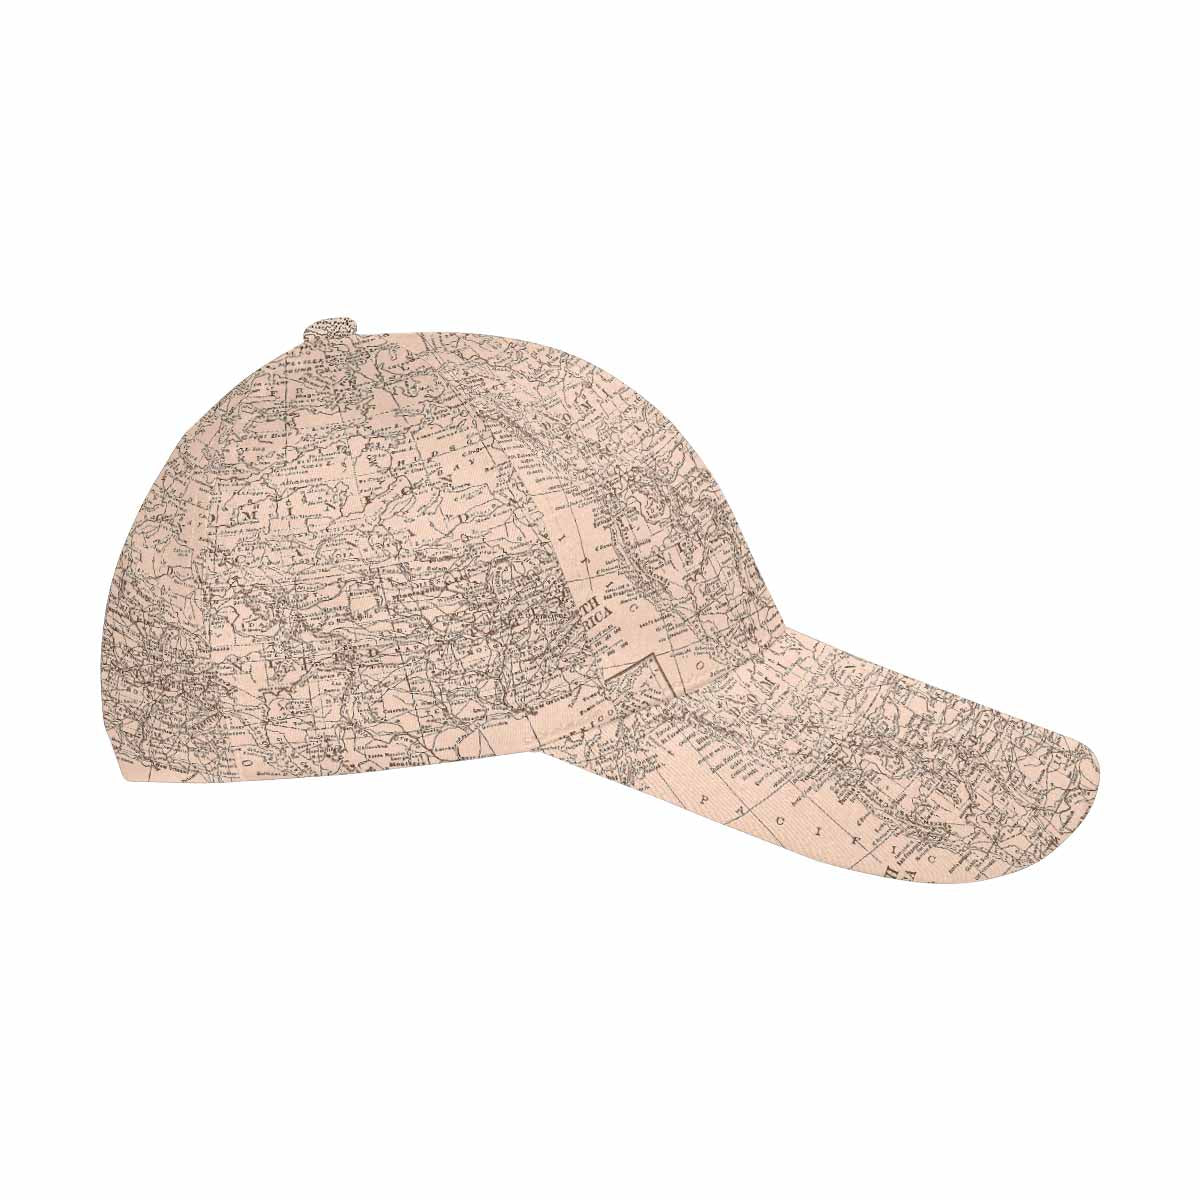 Antique Map design dad cap, trucker hat, Design 53